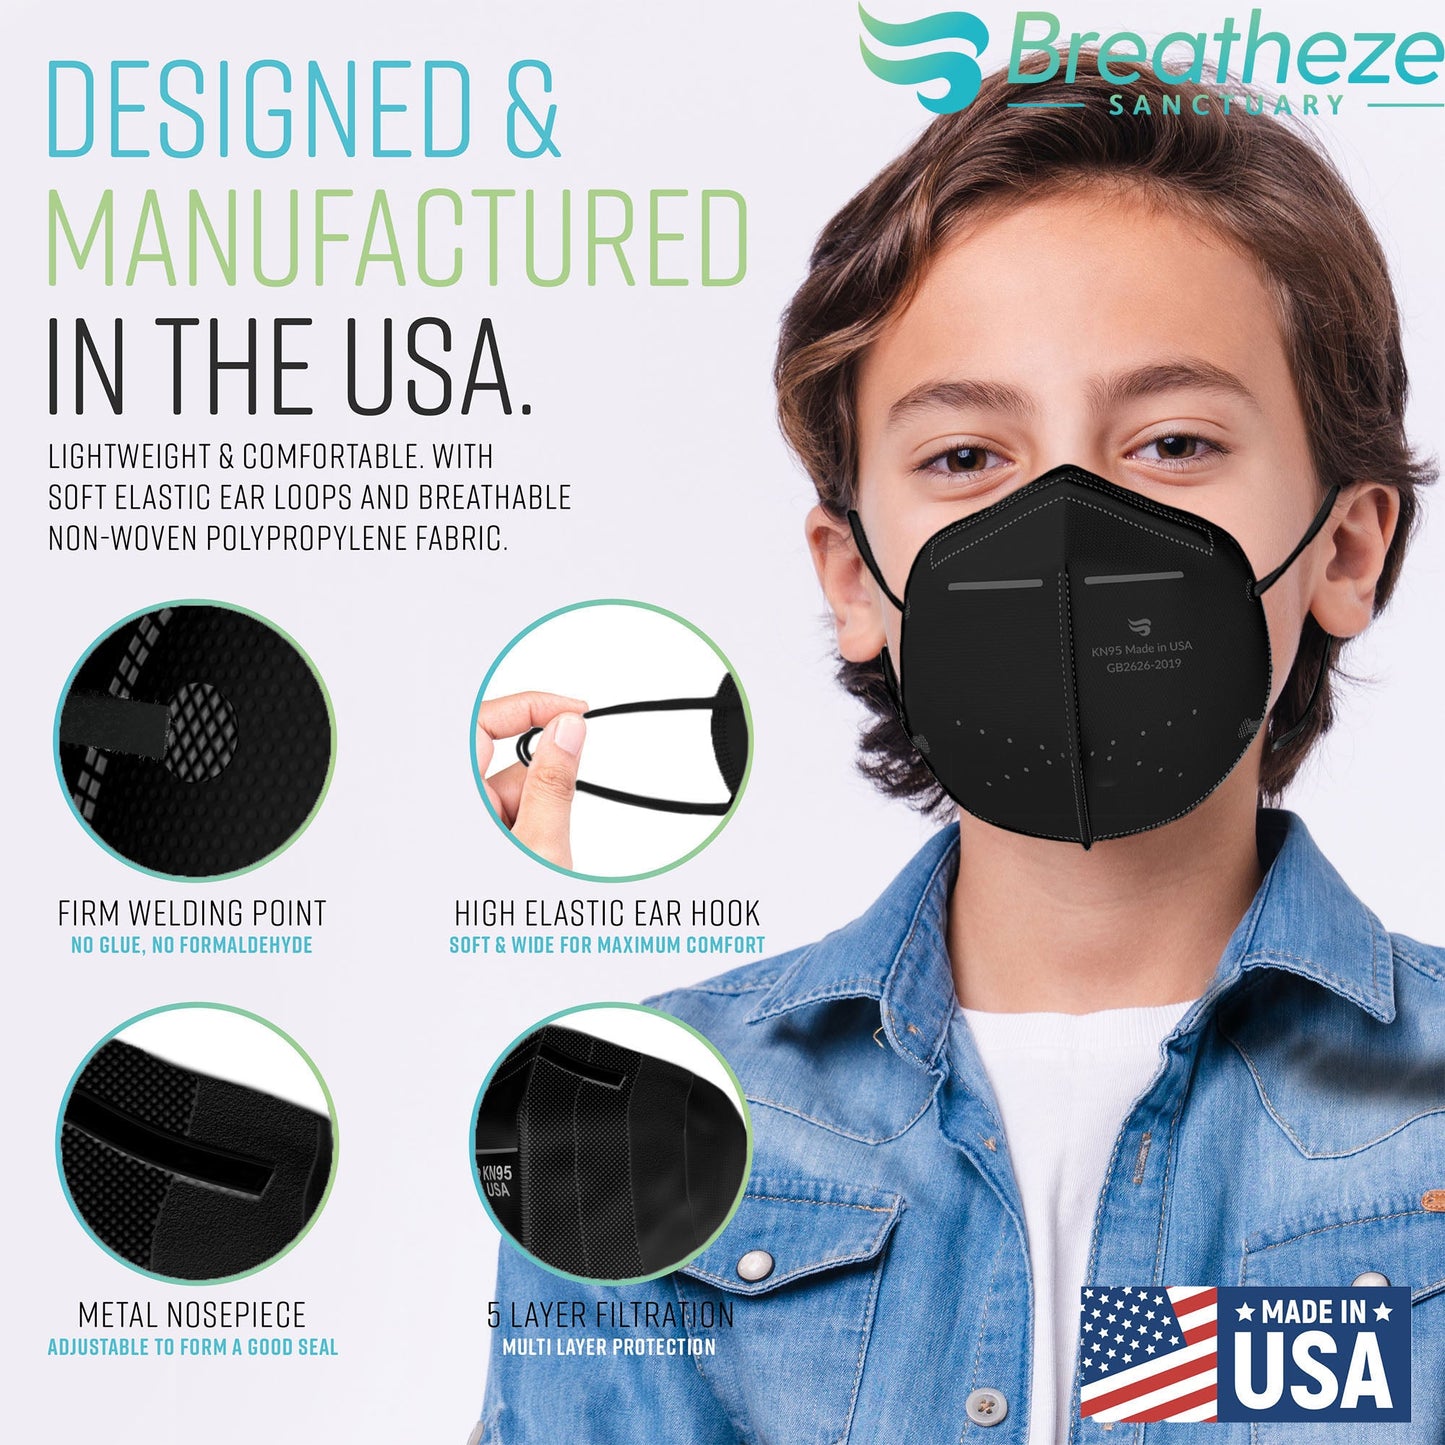 Breatheze by Sanctuary Kids KN95 Face Mask 75-Pack